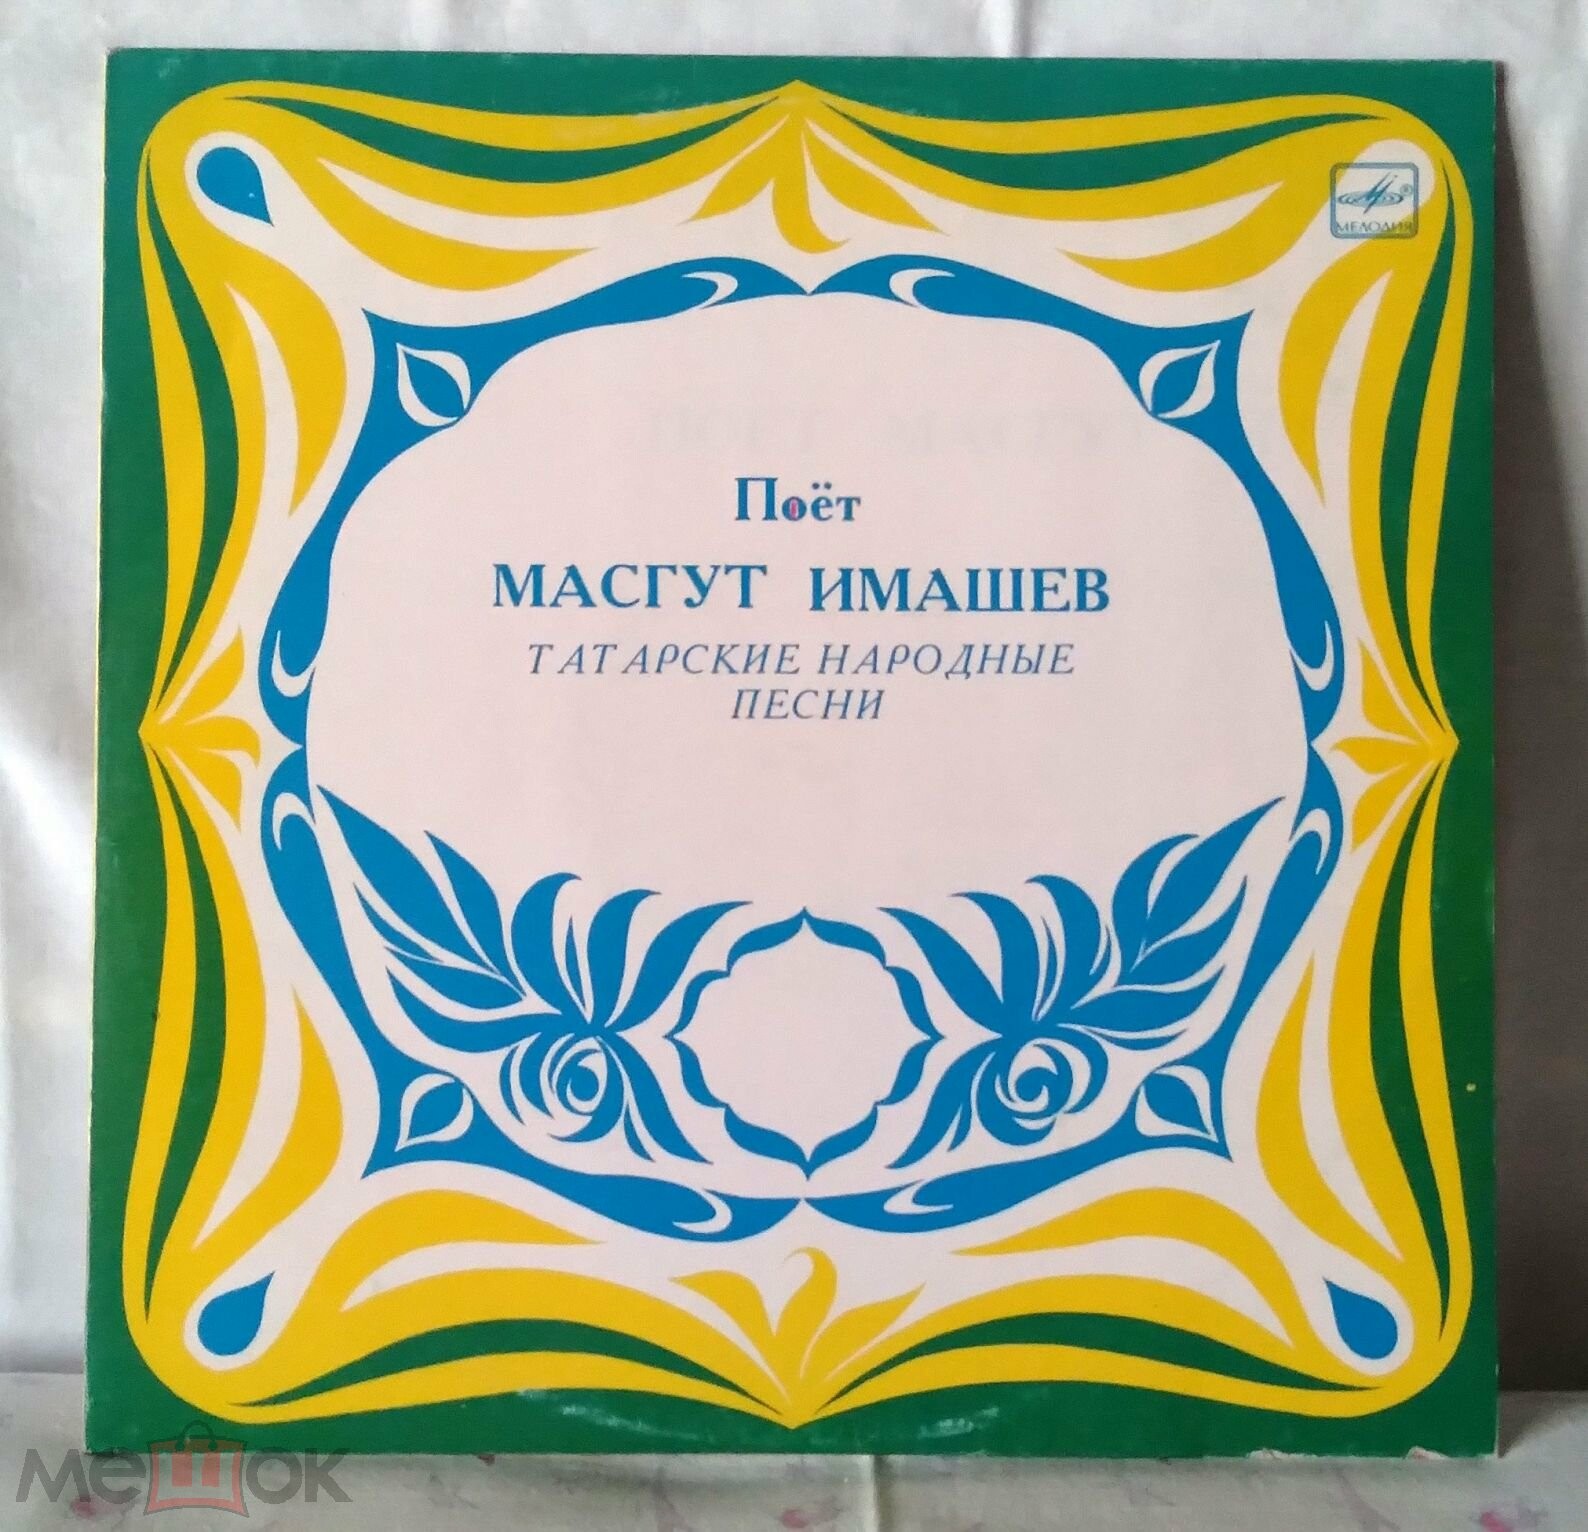 Маскут ИМАШЕВ: «Поёт Масгут Имашев» (на татарском языке)